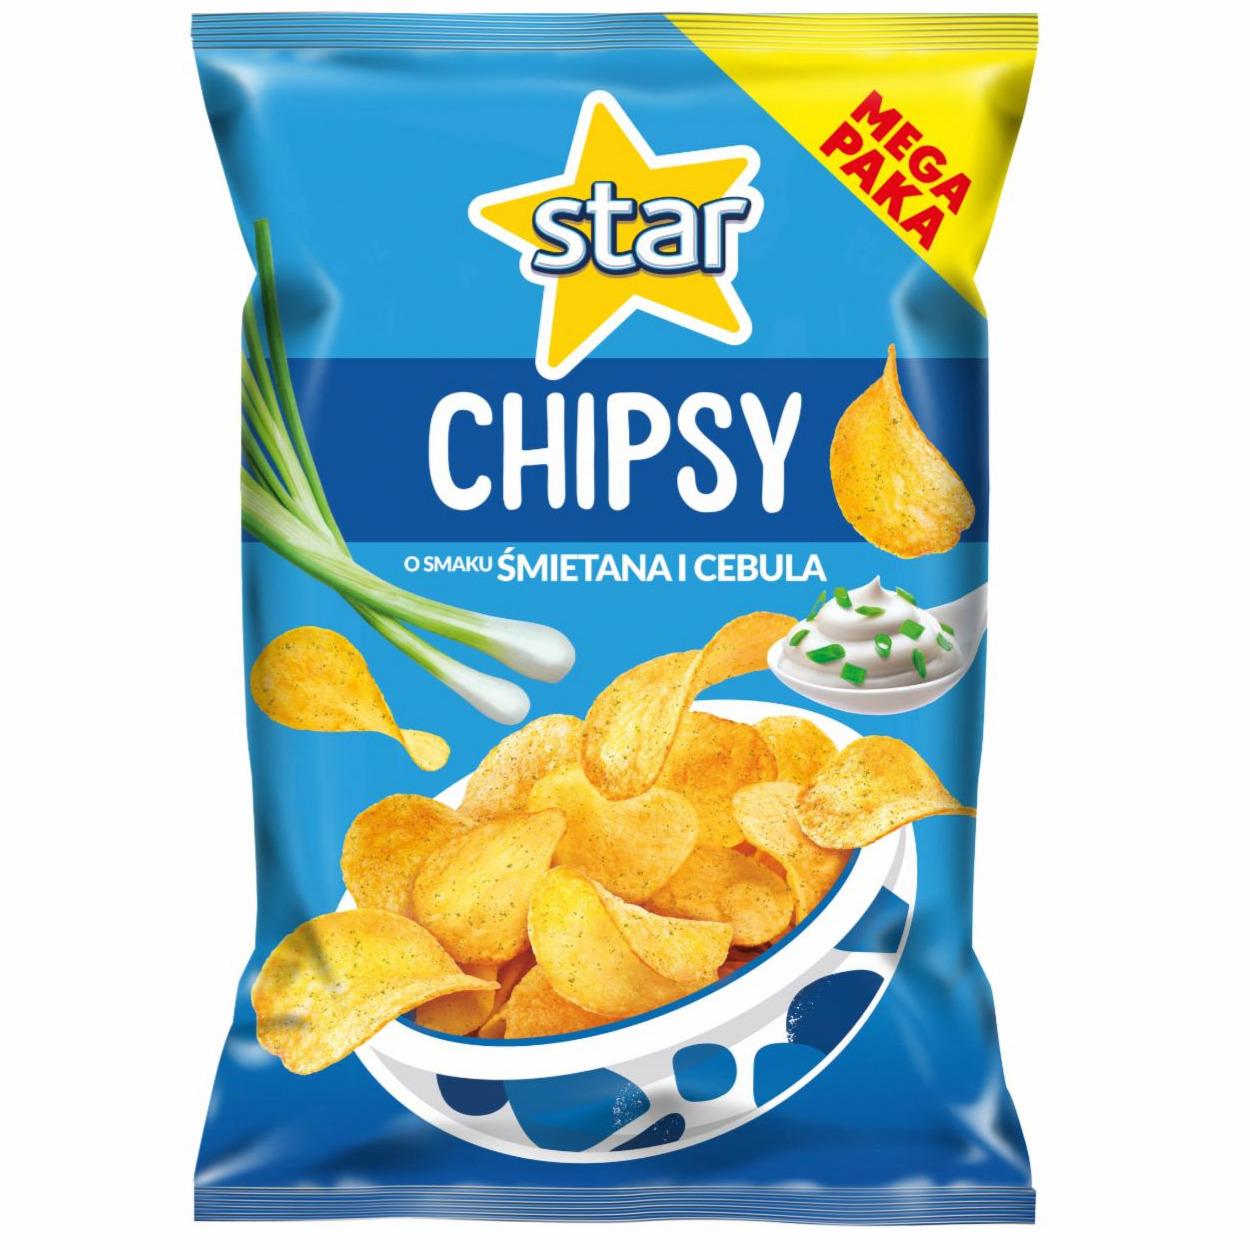 Zdjęcia - Star Chipsy o smaku śmietana i cebula 220 g